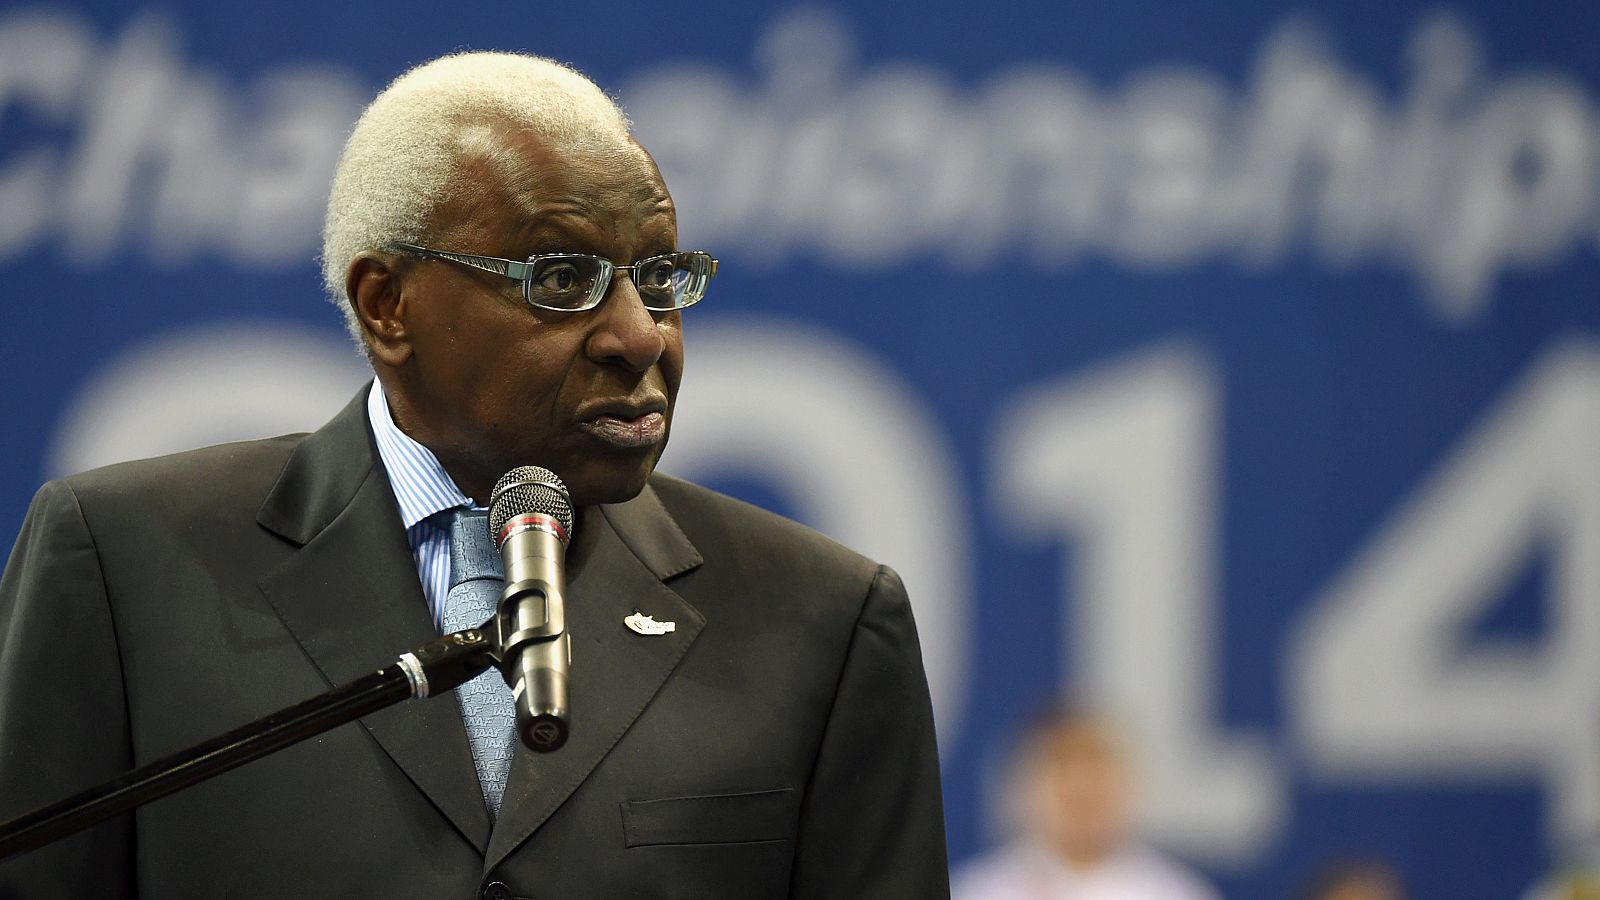 La justicia abre un procedimiento contra el expresidente de la IAAF Lamine Diack por corrupción